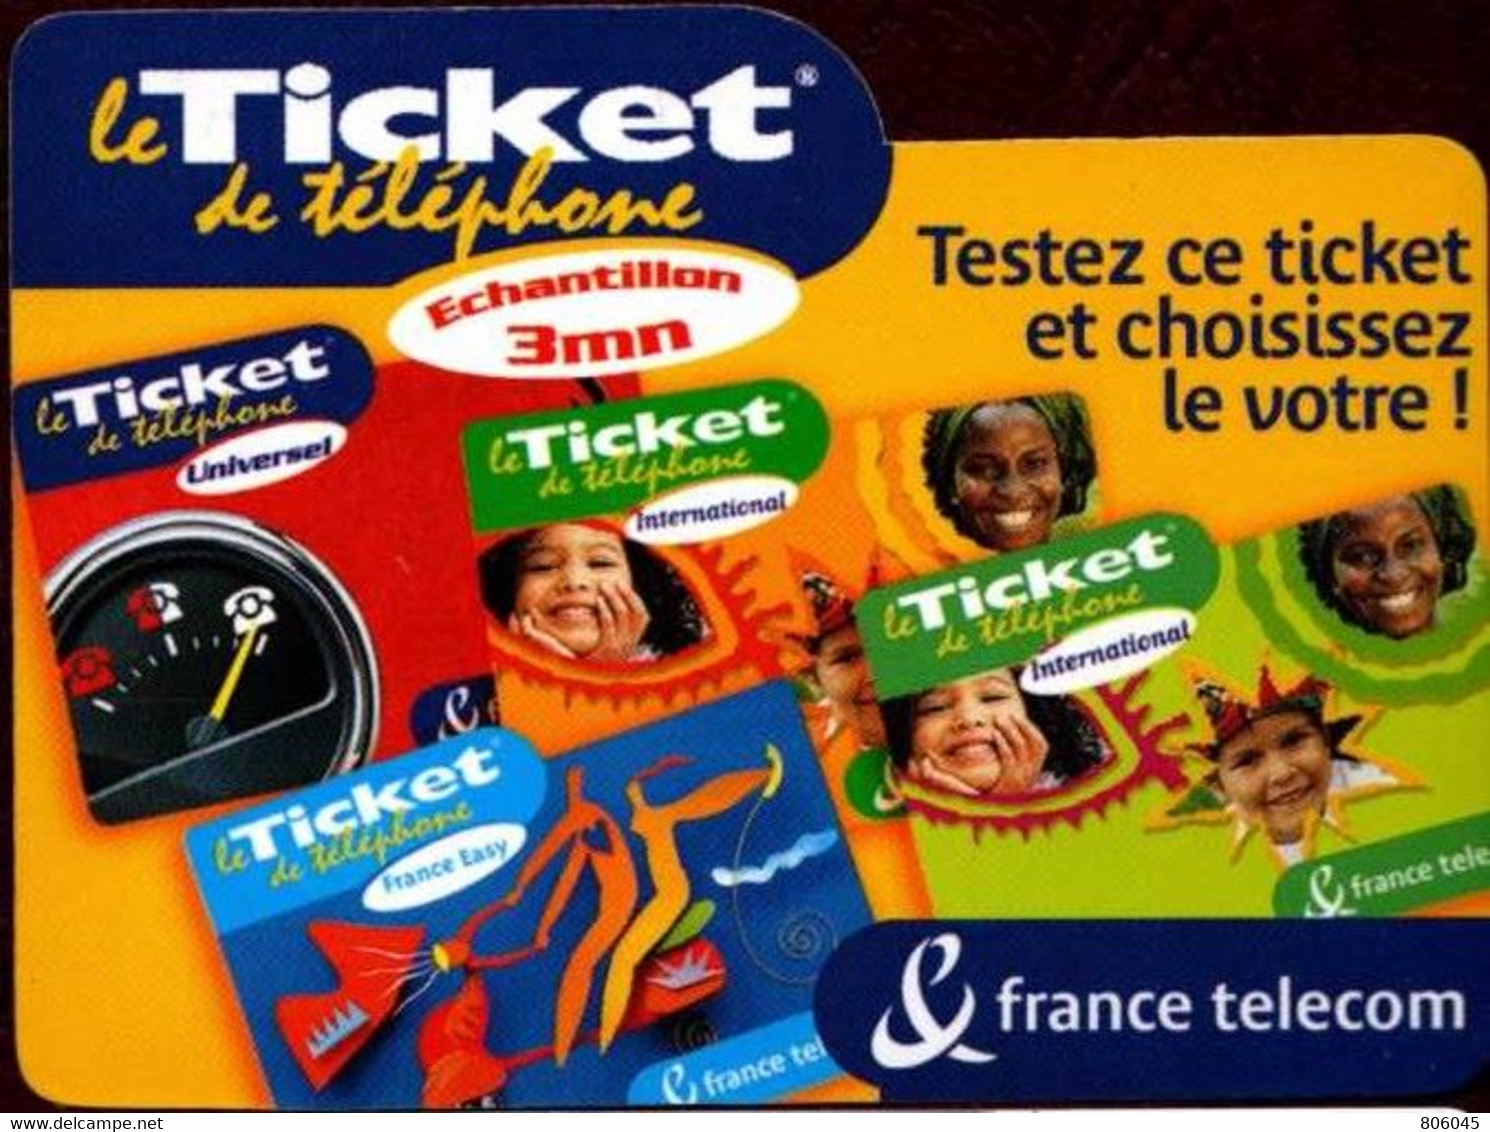 Ticket Télépone Orange - échantillon 3 Mn. - FT Tickets